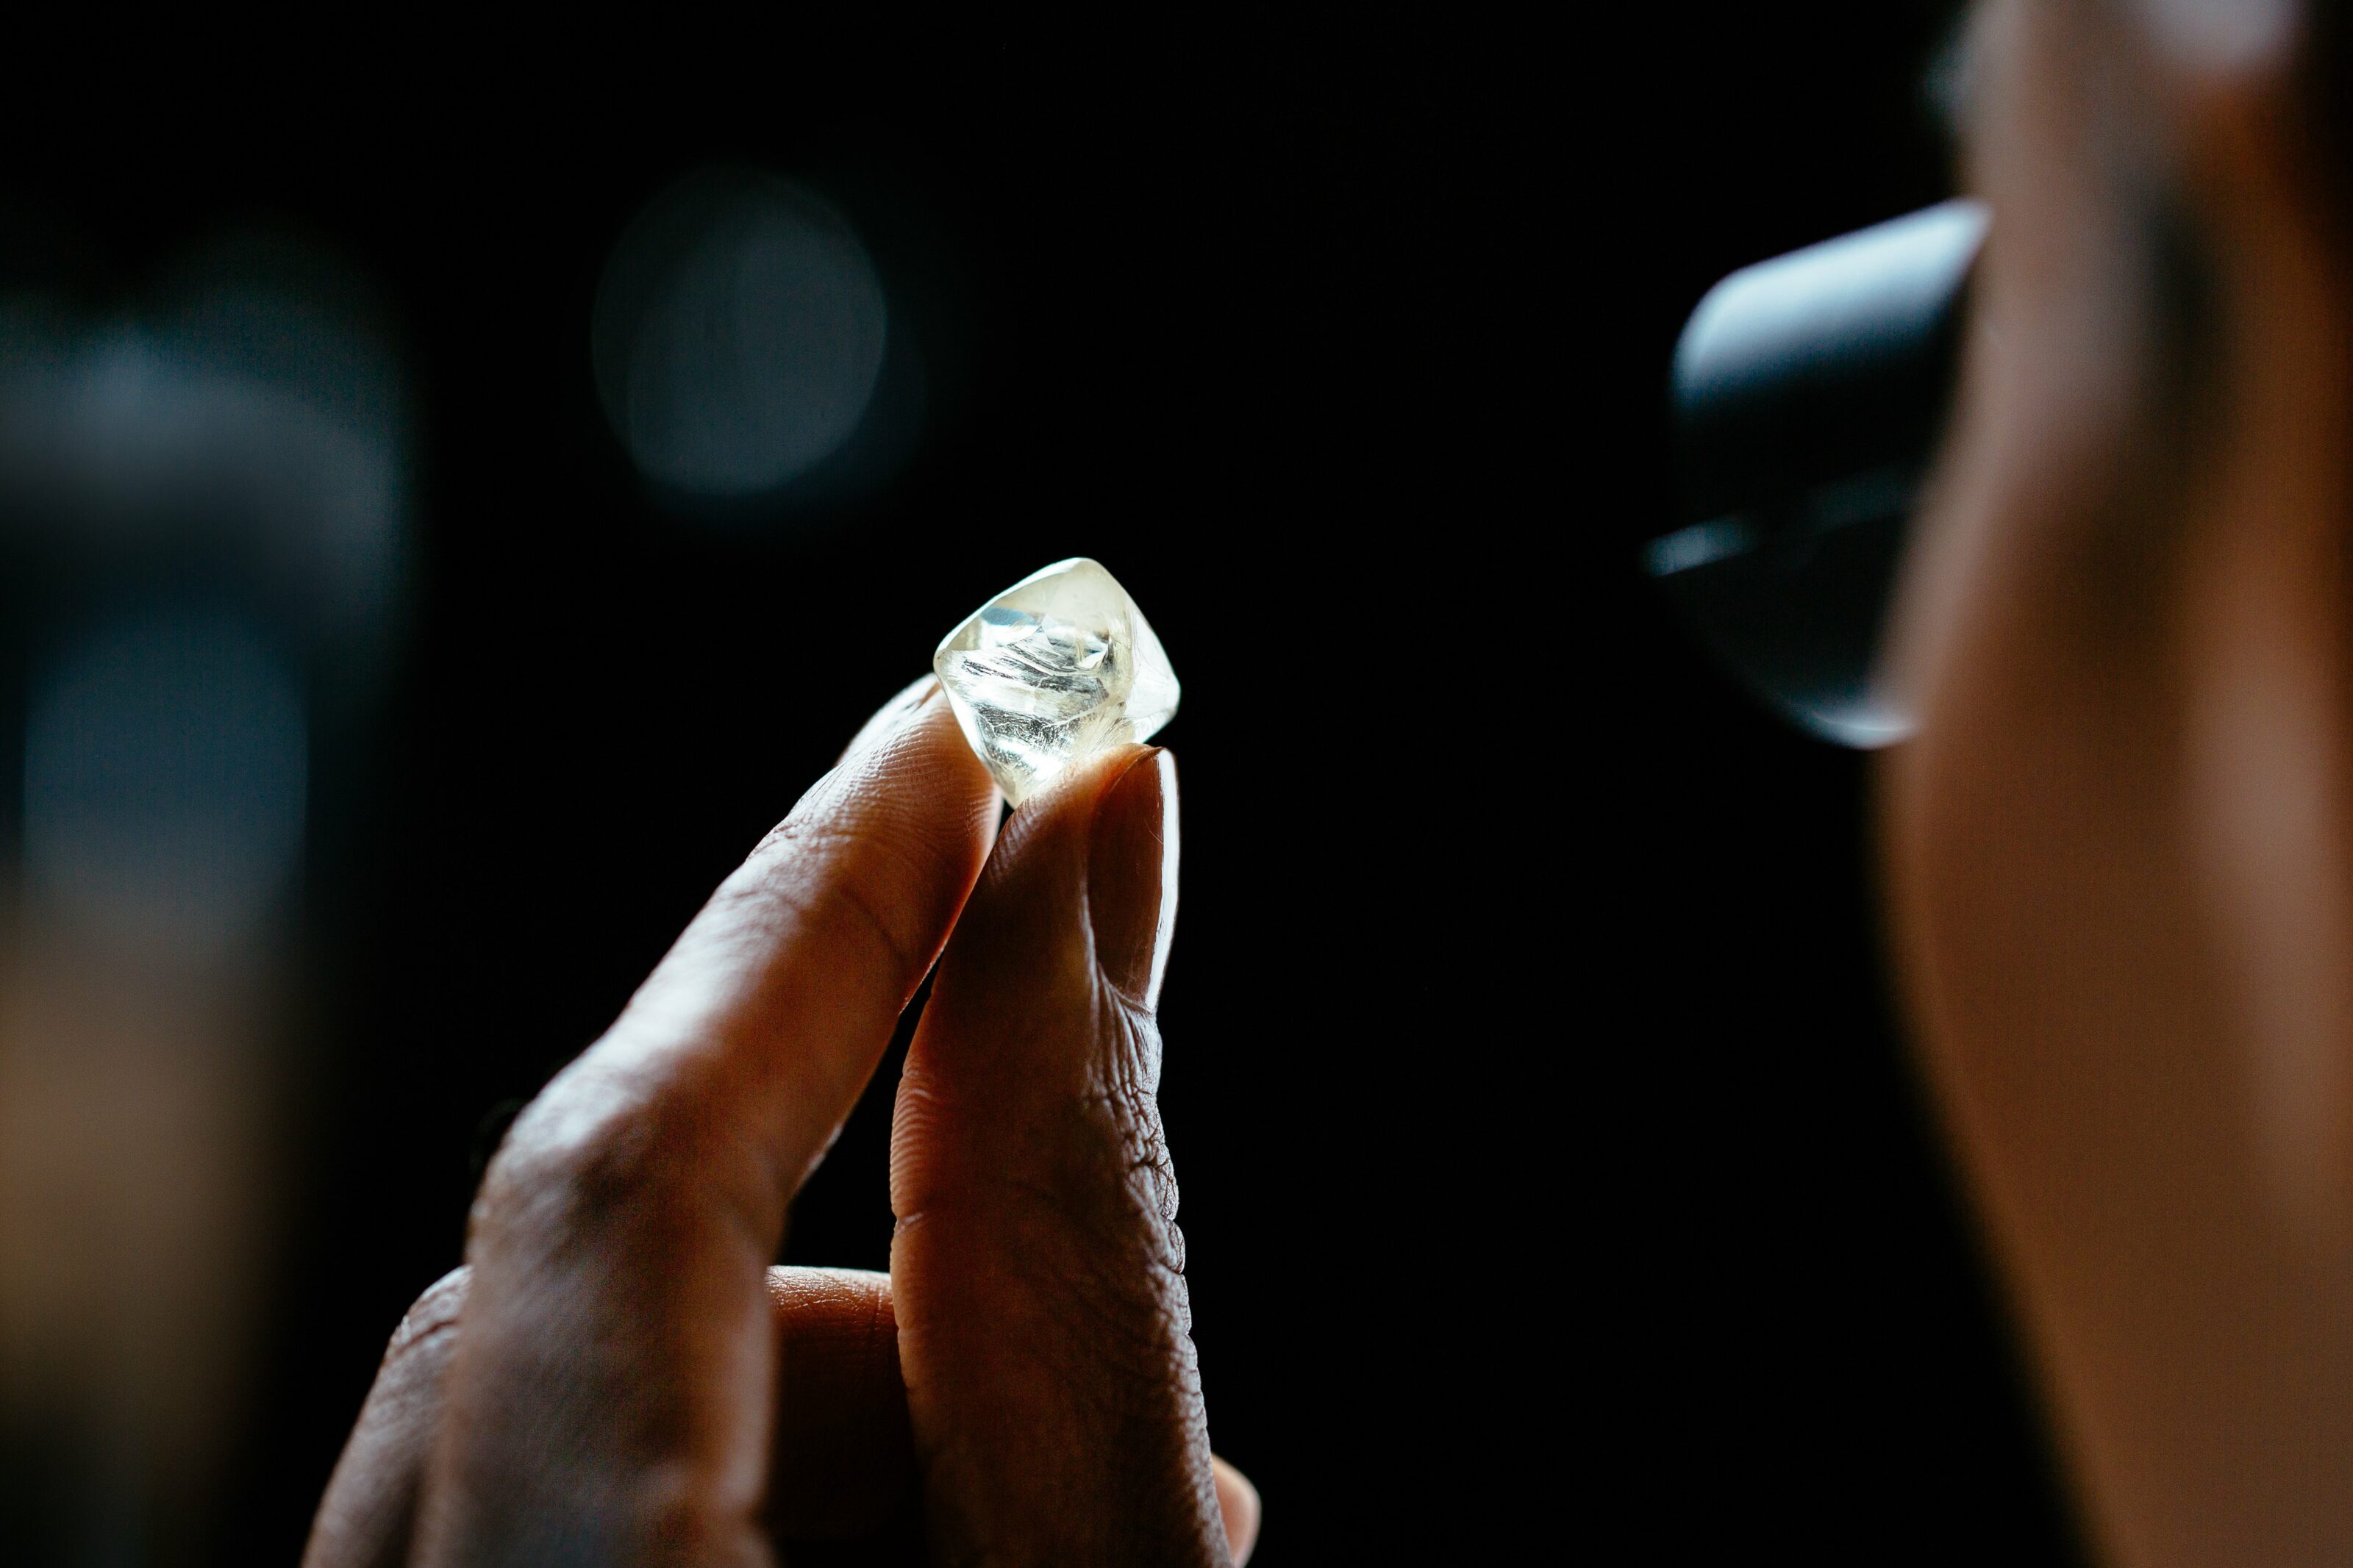 Examining natural rough diamond through a loupe 